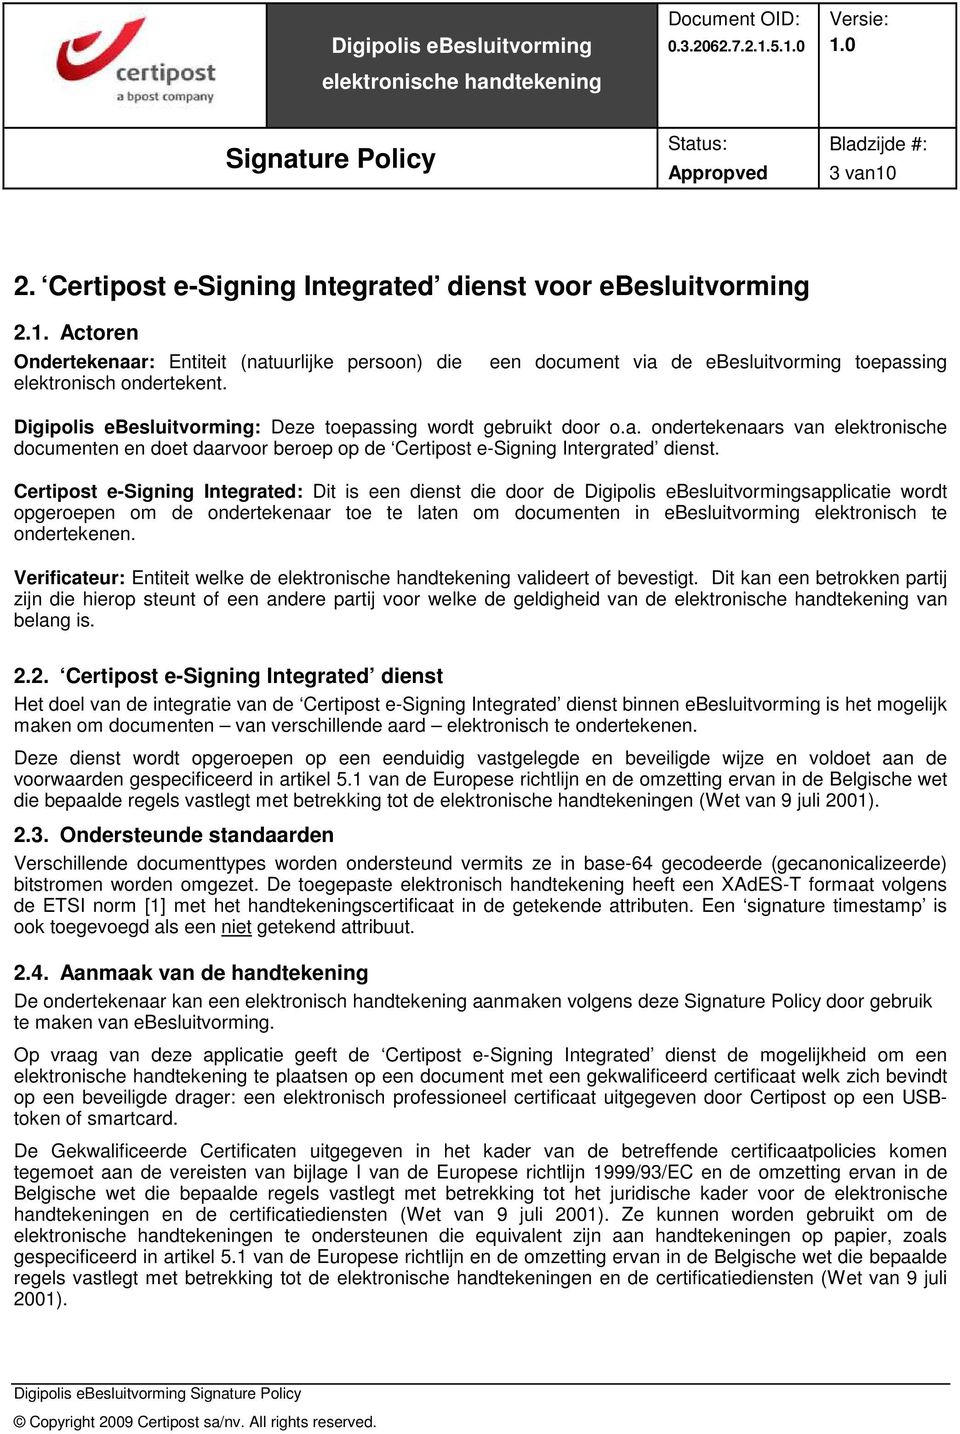 Certipost e-signing Integrated: Dit is een dienst die door de Digipolis ebesluitvormingsapplicatie wordt opgeroepen om de ondertekenaar toe te laten om documenten in ebesluitvorming elektronisch te